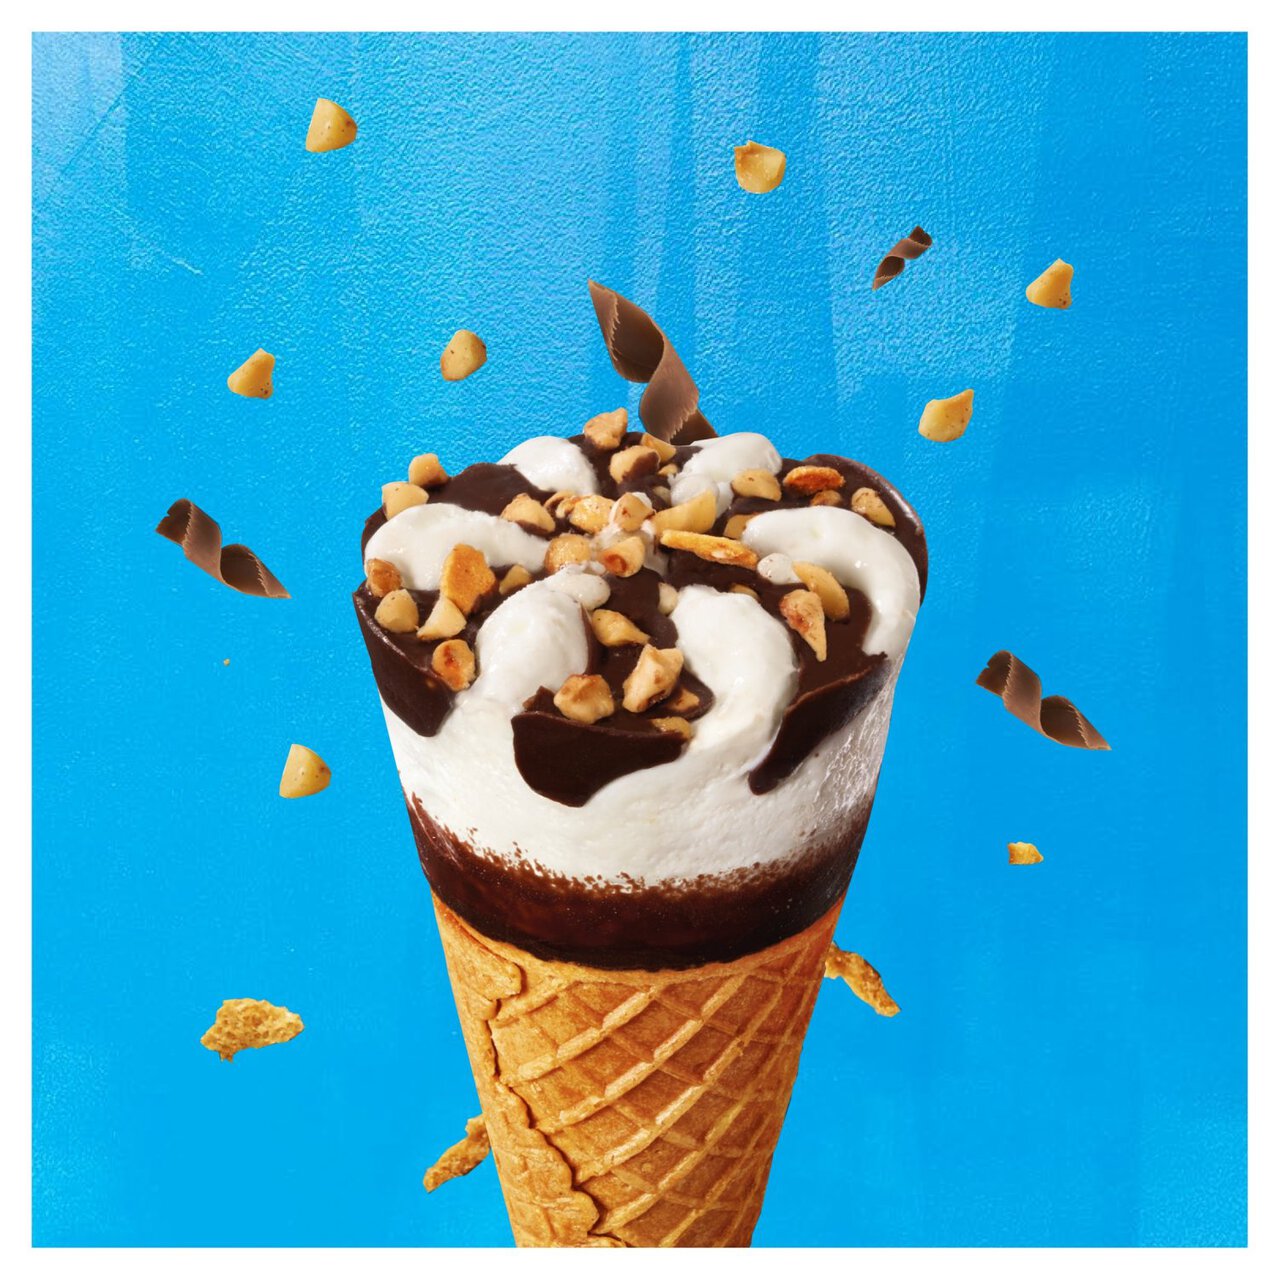 Cornetto Classico Ice Cream Cones 6 x 90ml